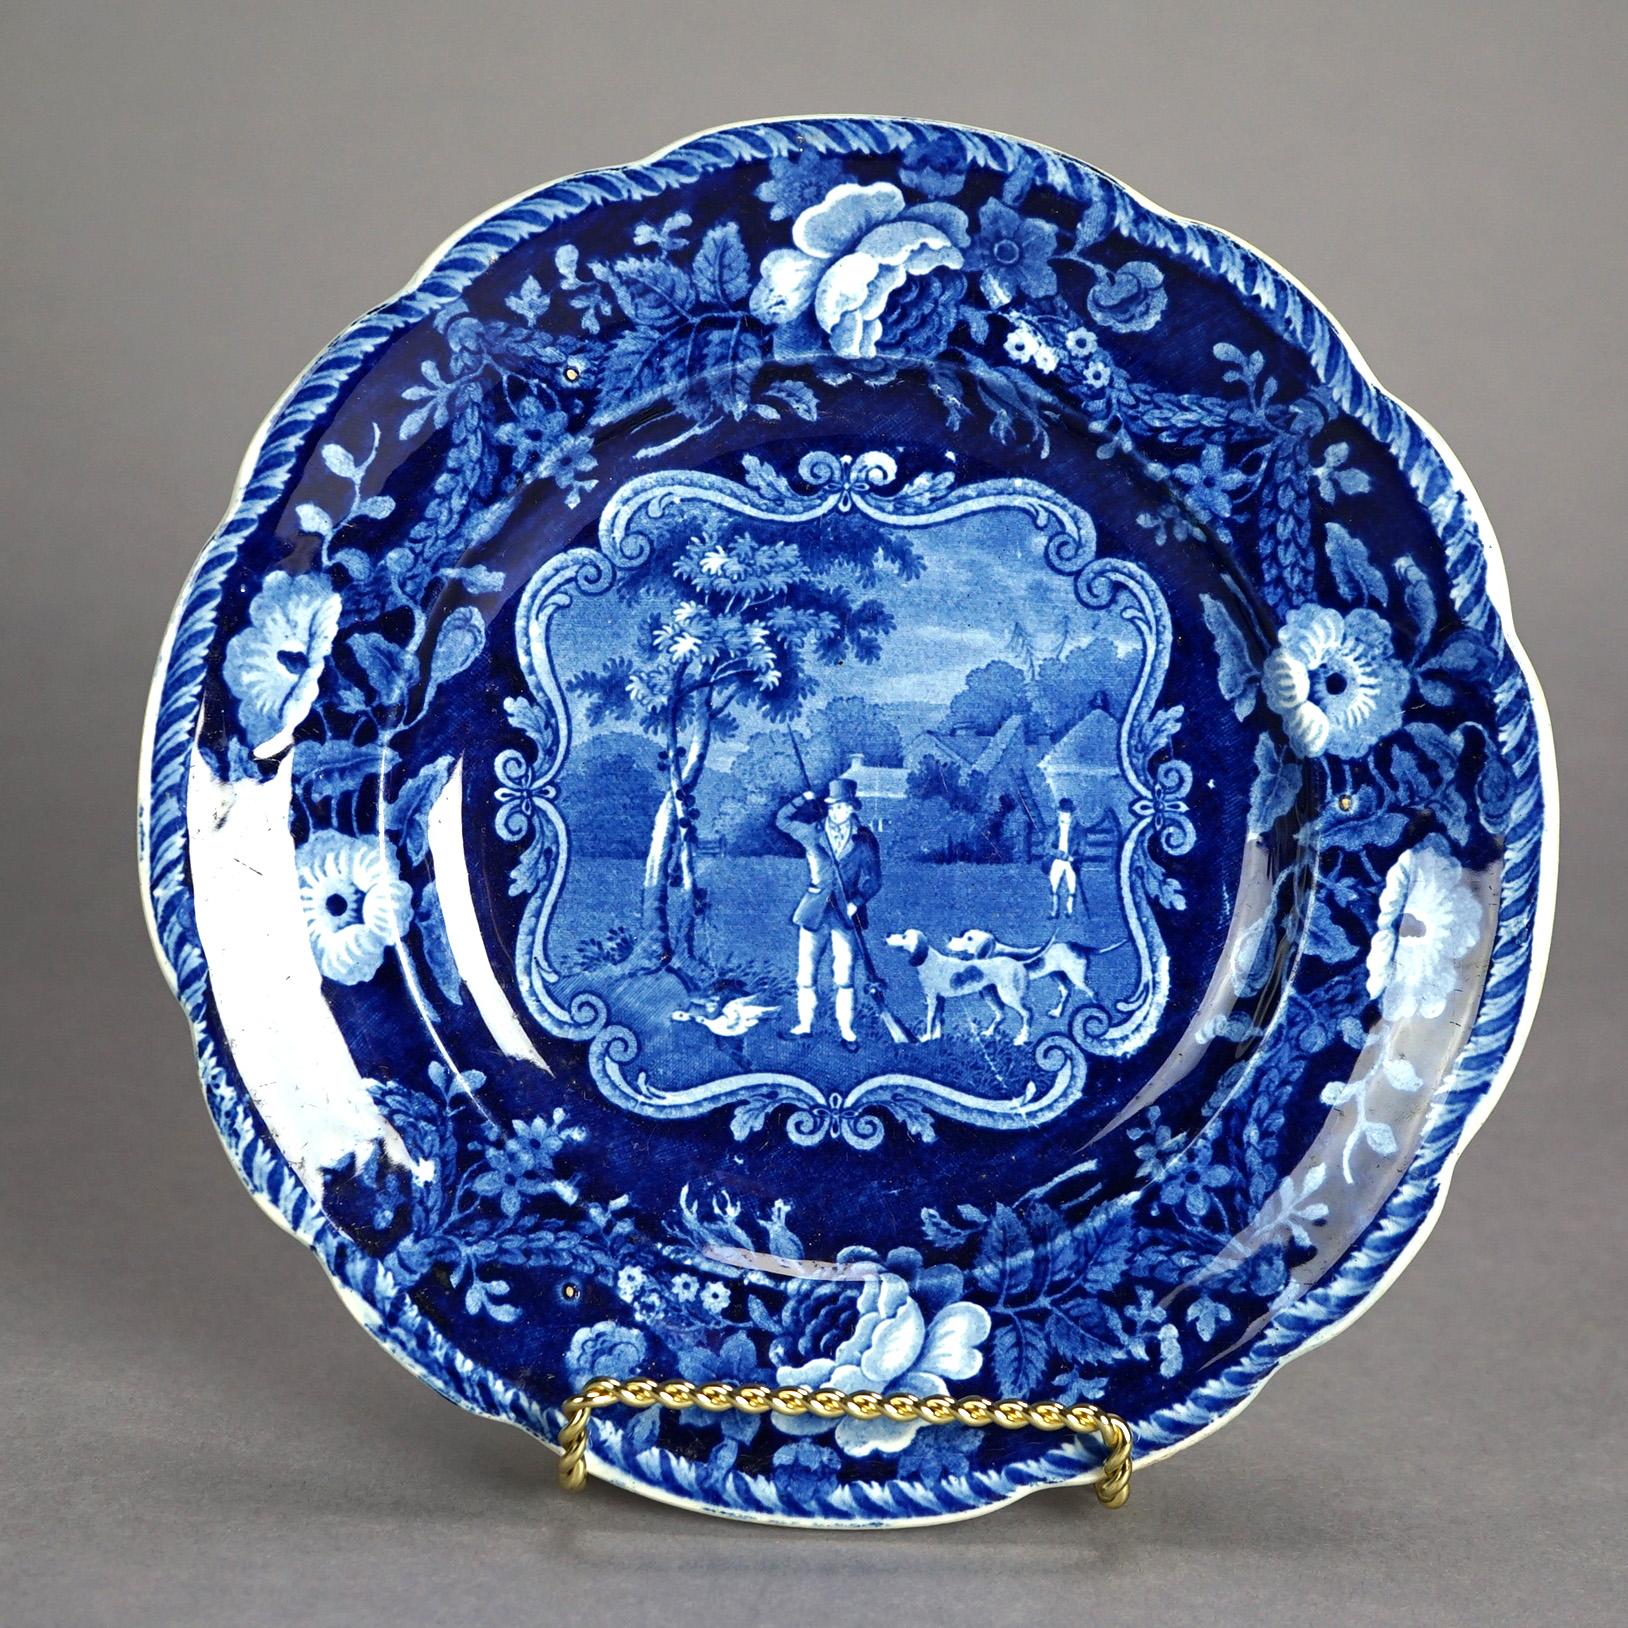 Five Antique English Staffordshire Pottery Flow Blue Plates with Hunt Scènes 19th C

Measures - largest 9